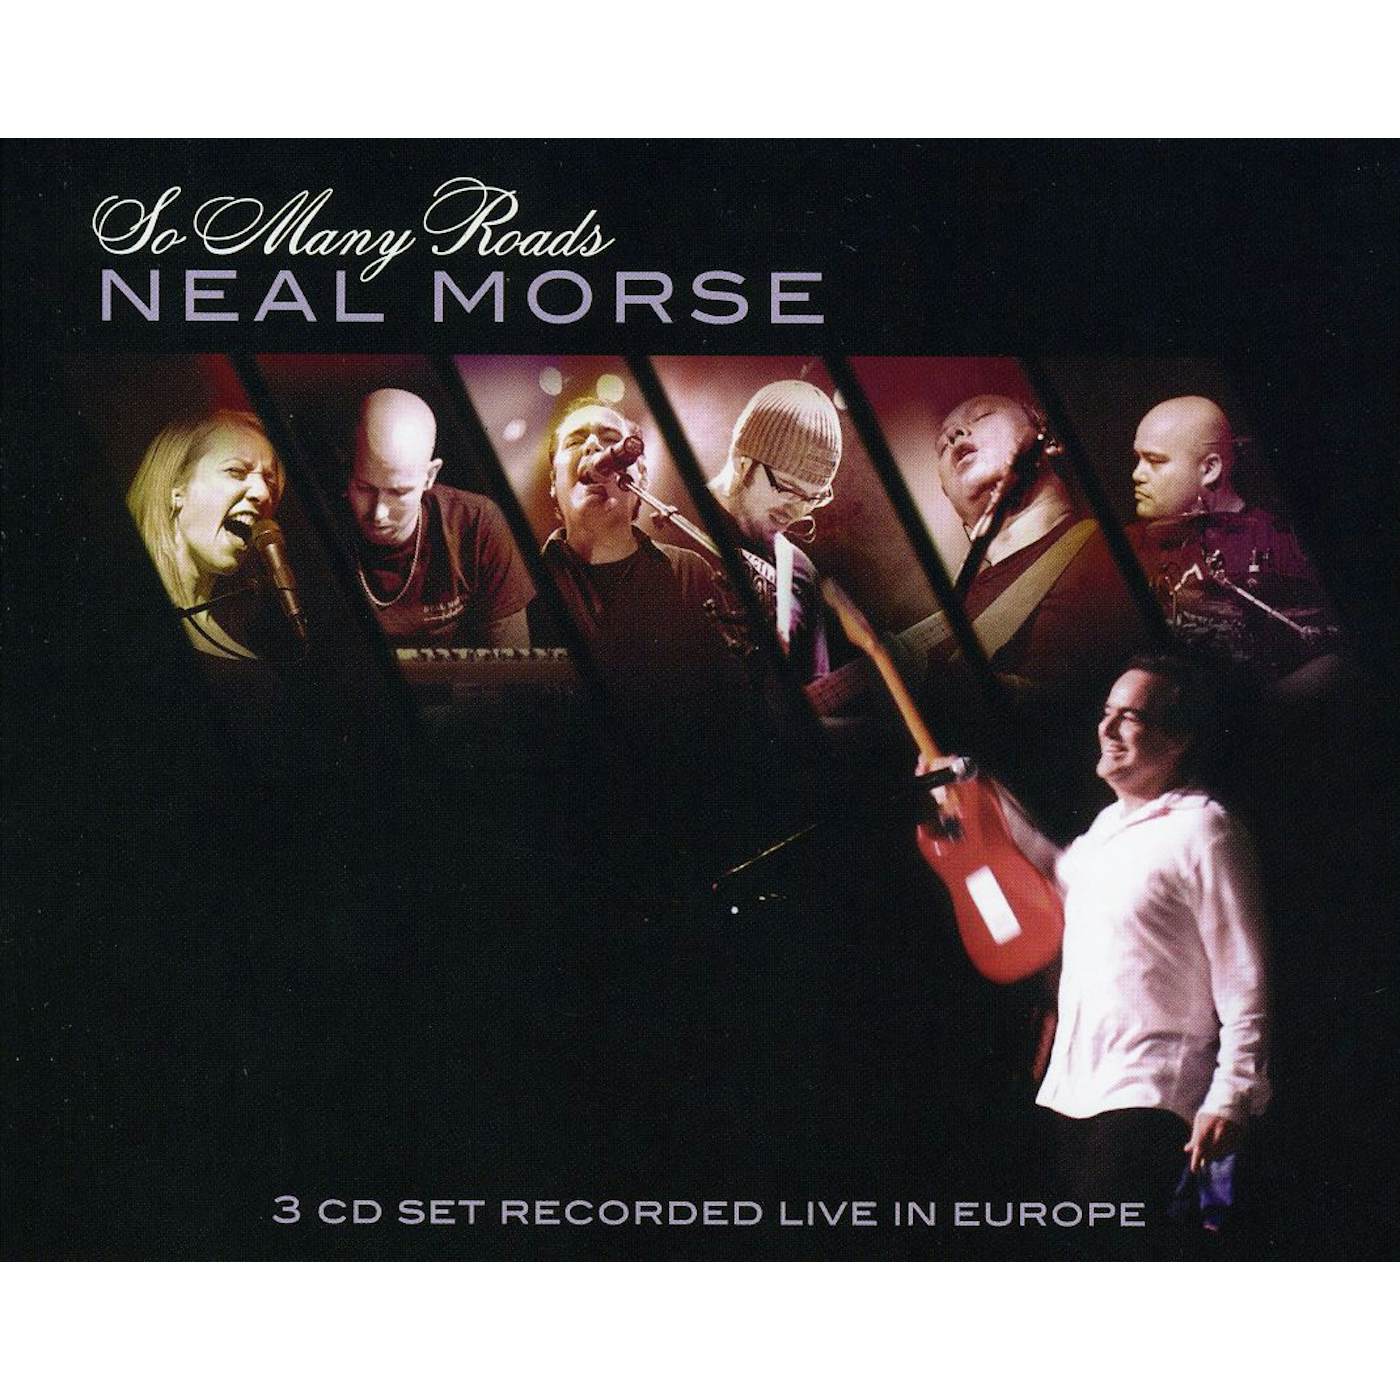 Neal Morse SO MANY ROADS CD